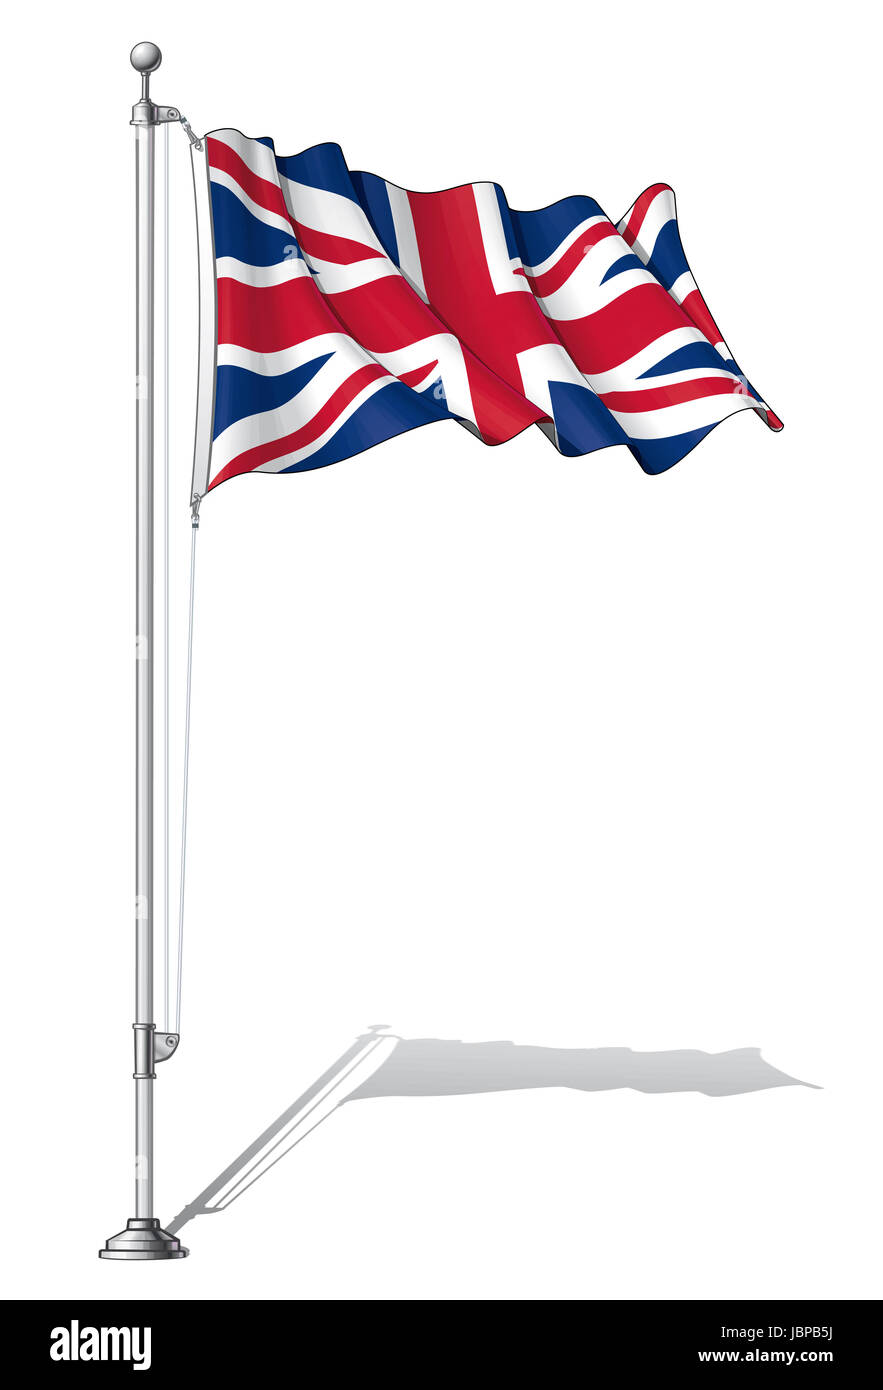 Vektor-Illustration einer winkenden UK Flagge auf einem Fahnenmast  befestigen. Fahne und Mast in separate Schichten, Strichzeichnungen,  Schattierung und Farbe fein säuberlich in Gruppen für die einfache  Bearbeitung Stockfotografie - Alamy